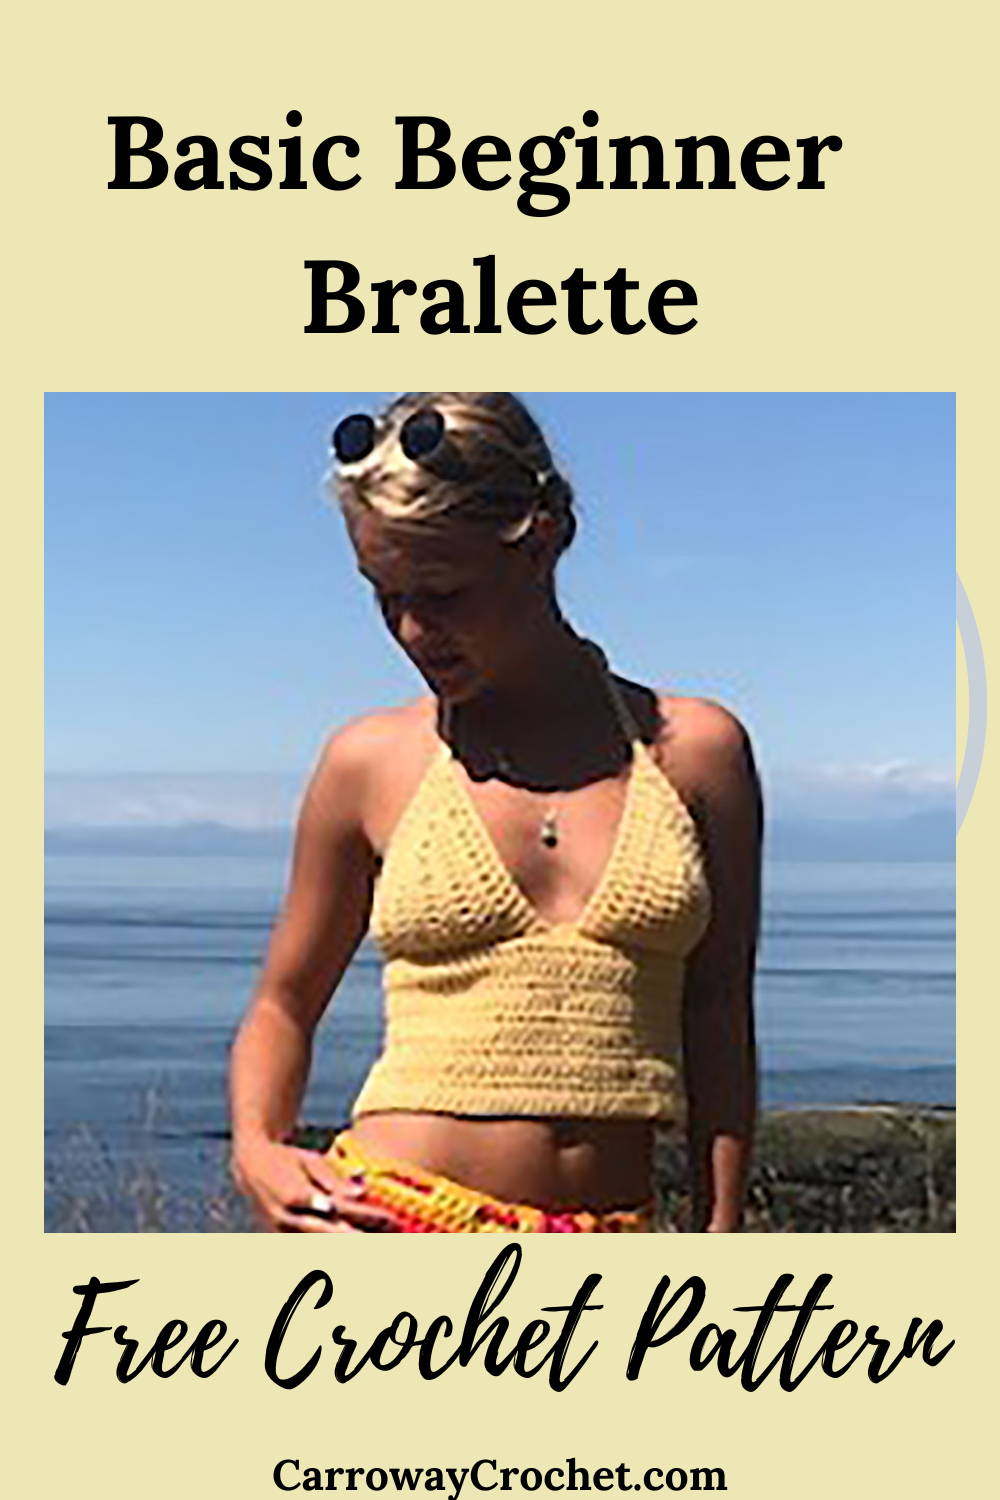 Free Crochet Bralette Pattern The Basic Beginner Bralette - Carroway Crochet